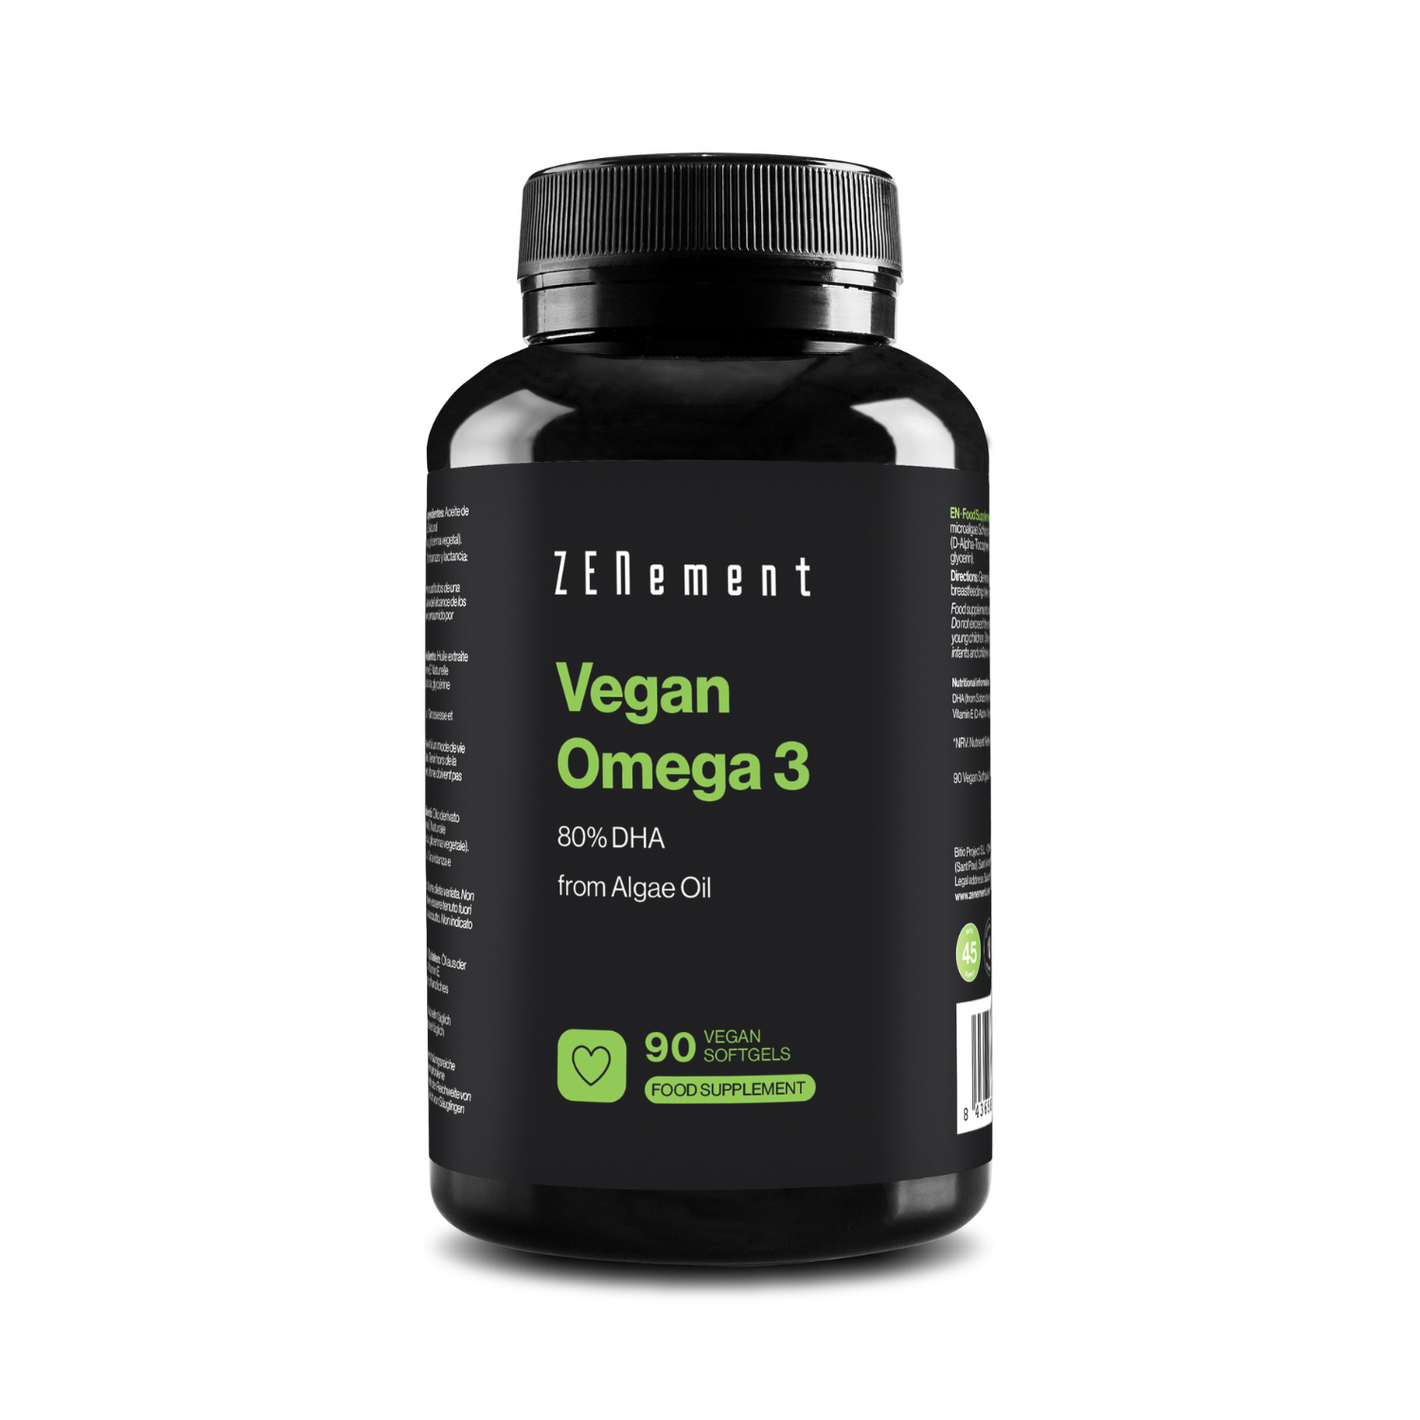 Vegan Omega 3 80% DHA - 90 Vegan Softgels